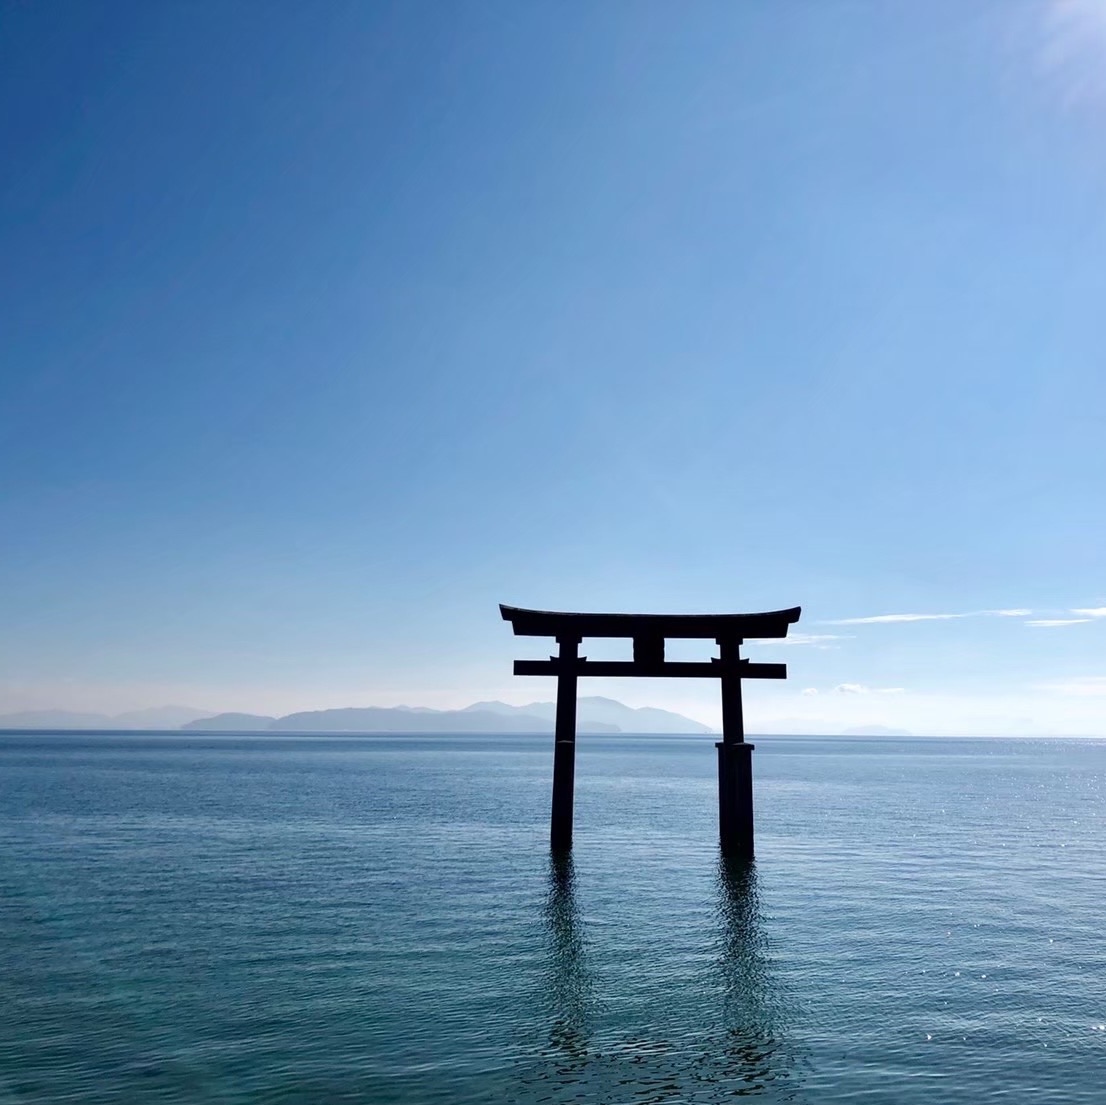 海中鳥居 Trip Com 琵琶湖の旅のブログ